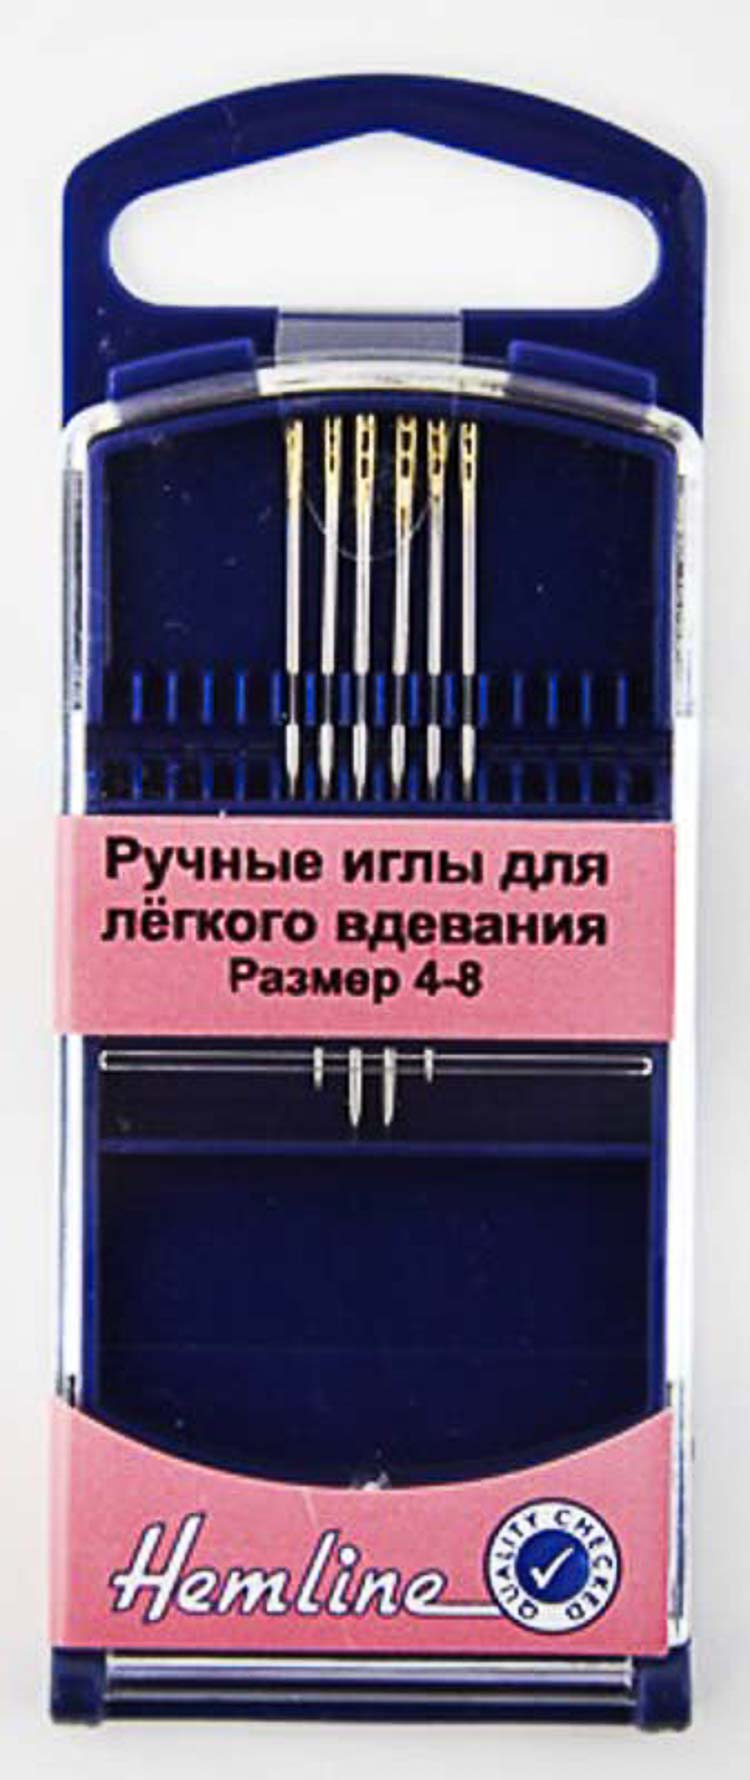 Иглы ручные "Hemline" 216G.48 для лёгкого вдевания в пластиковом контейнере № 4-8, 6 шт